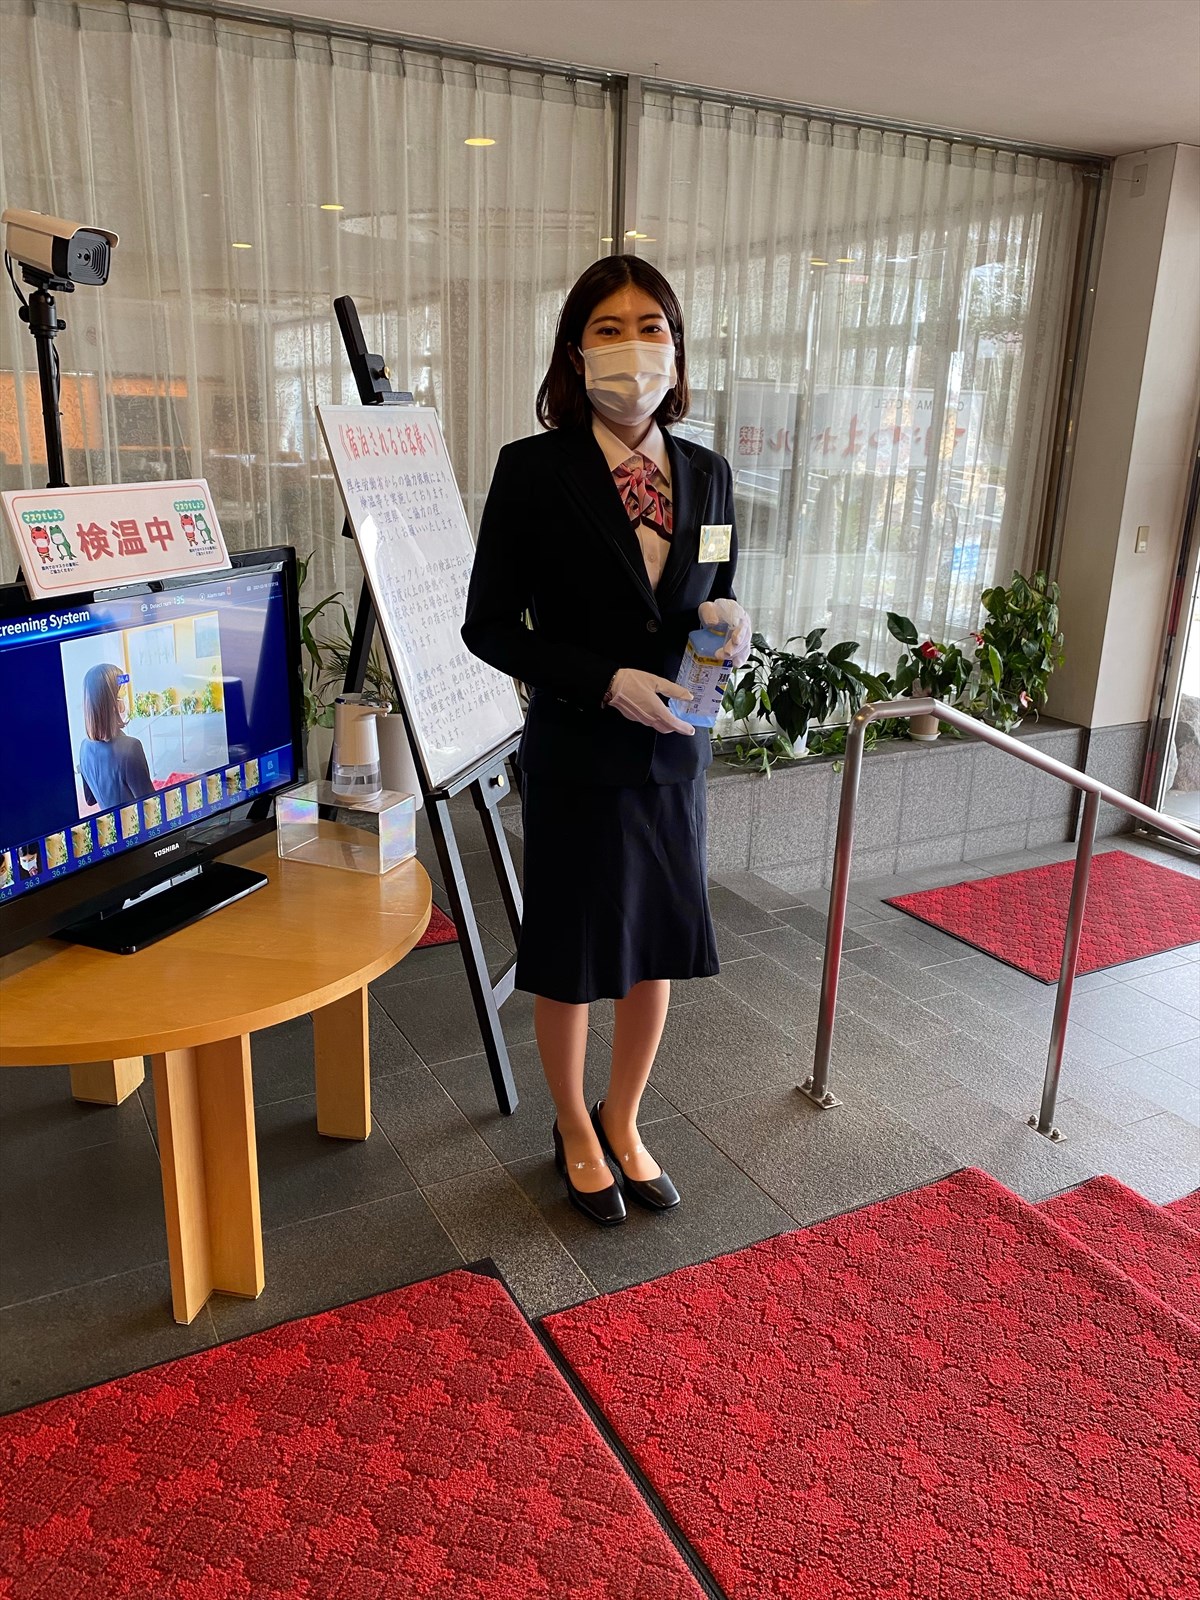 03.Three KSU Students Do Internships at Hotels in Japan During Pandemic